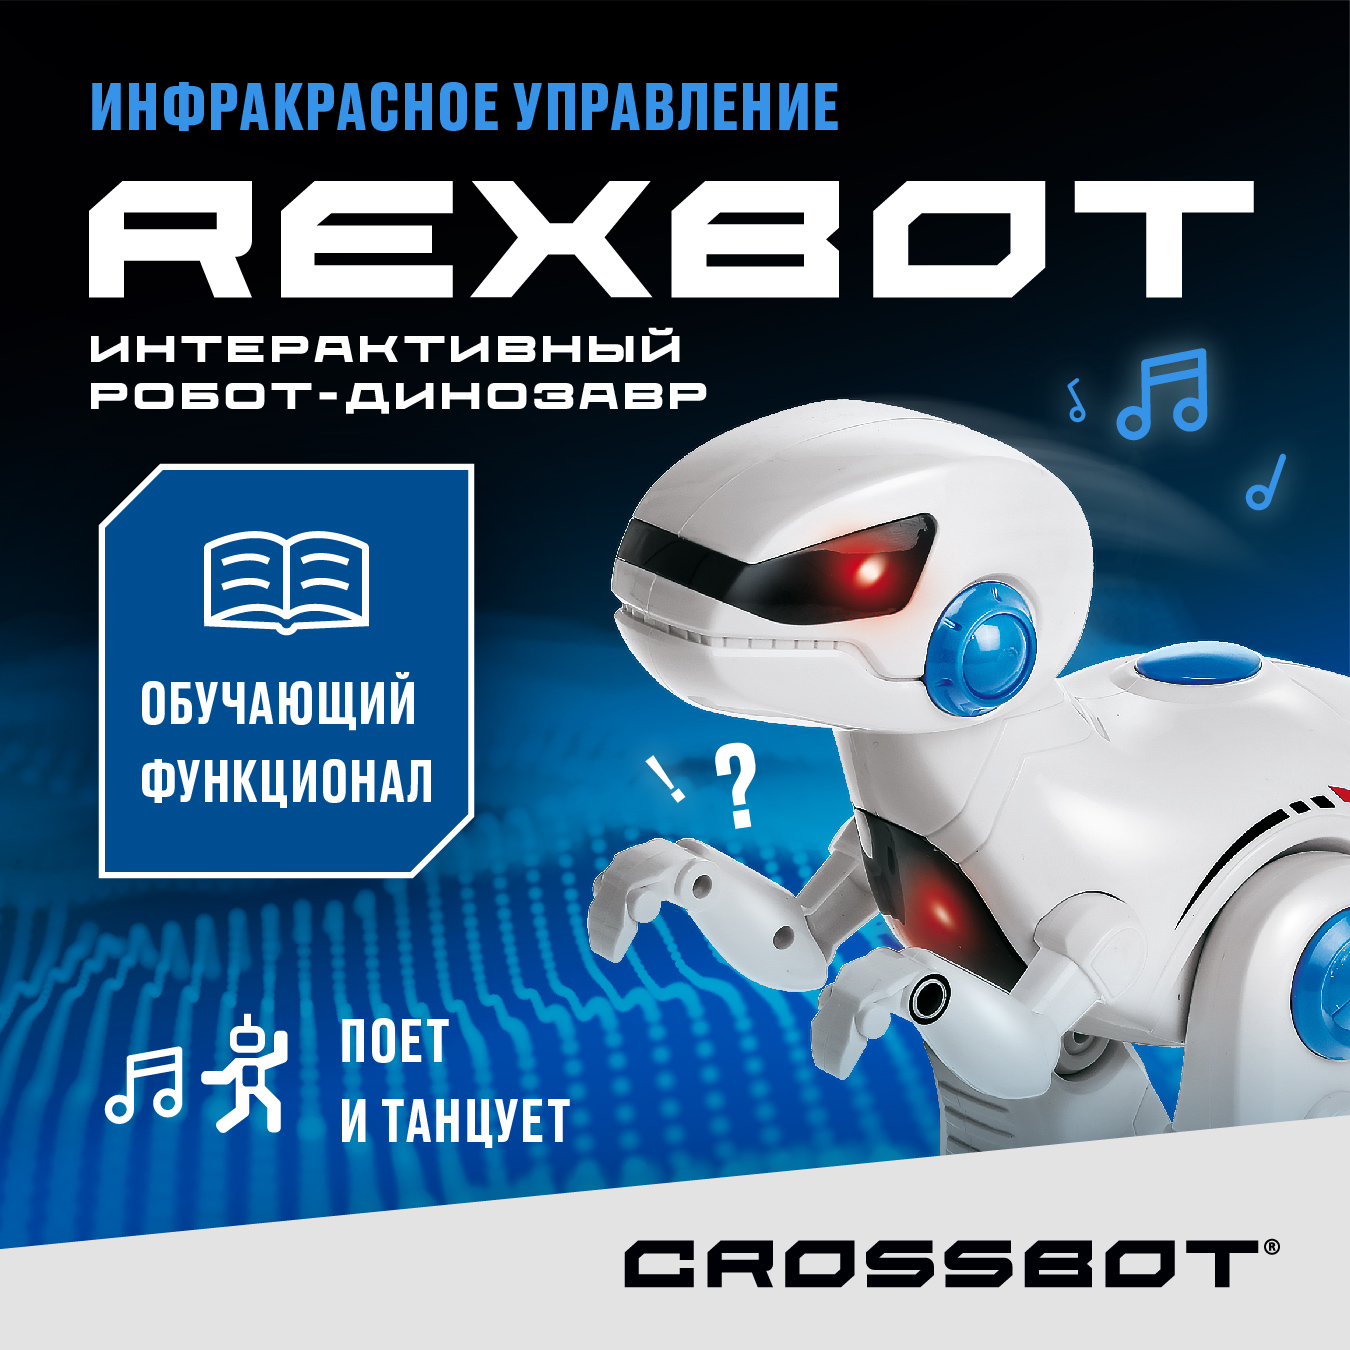 Радиоуправляемая игрушка Робот Динозавр Рекс на пульте Crossbot